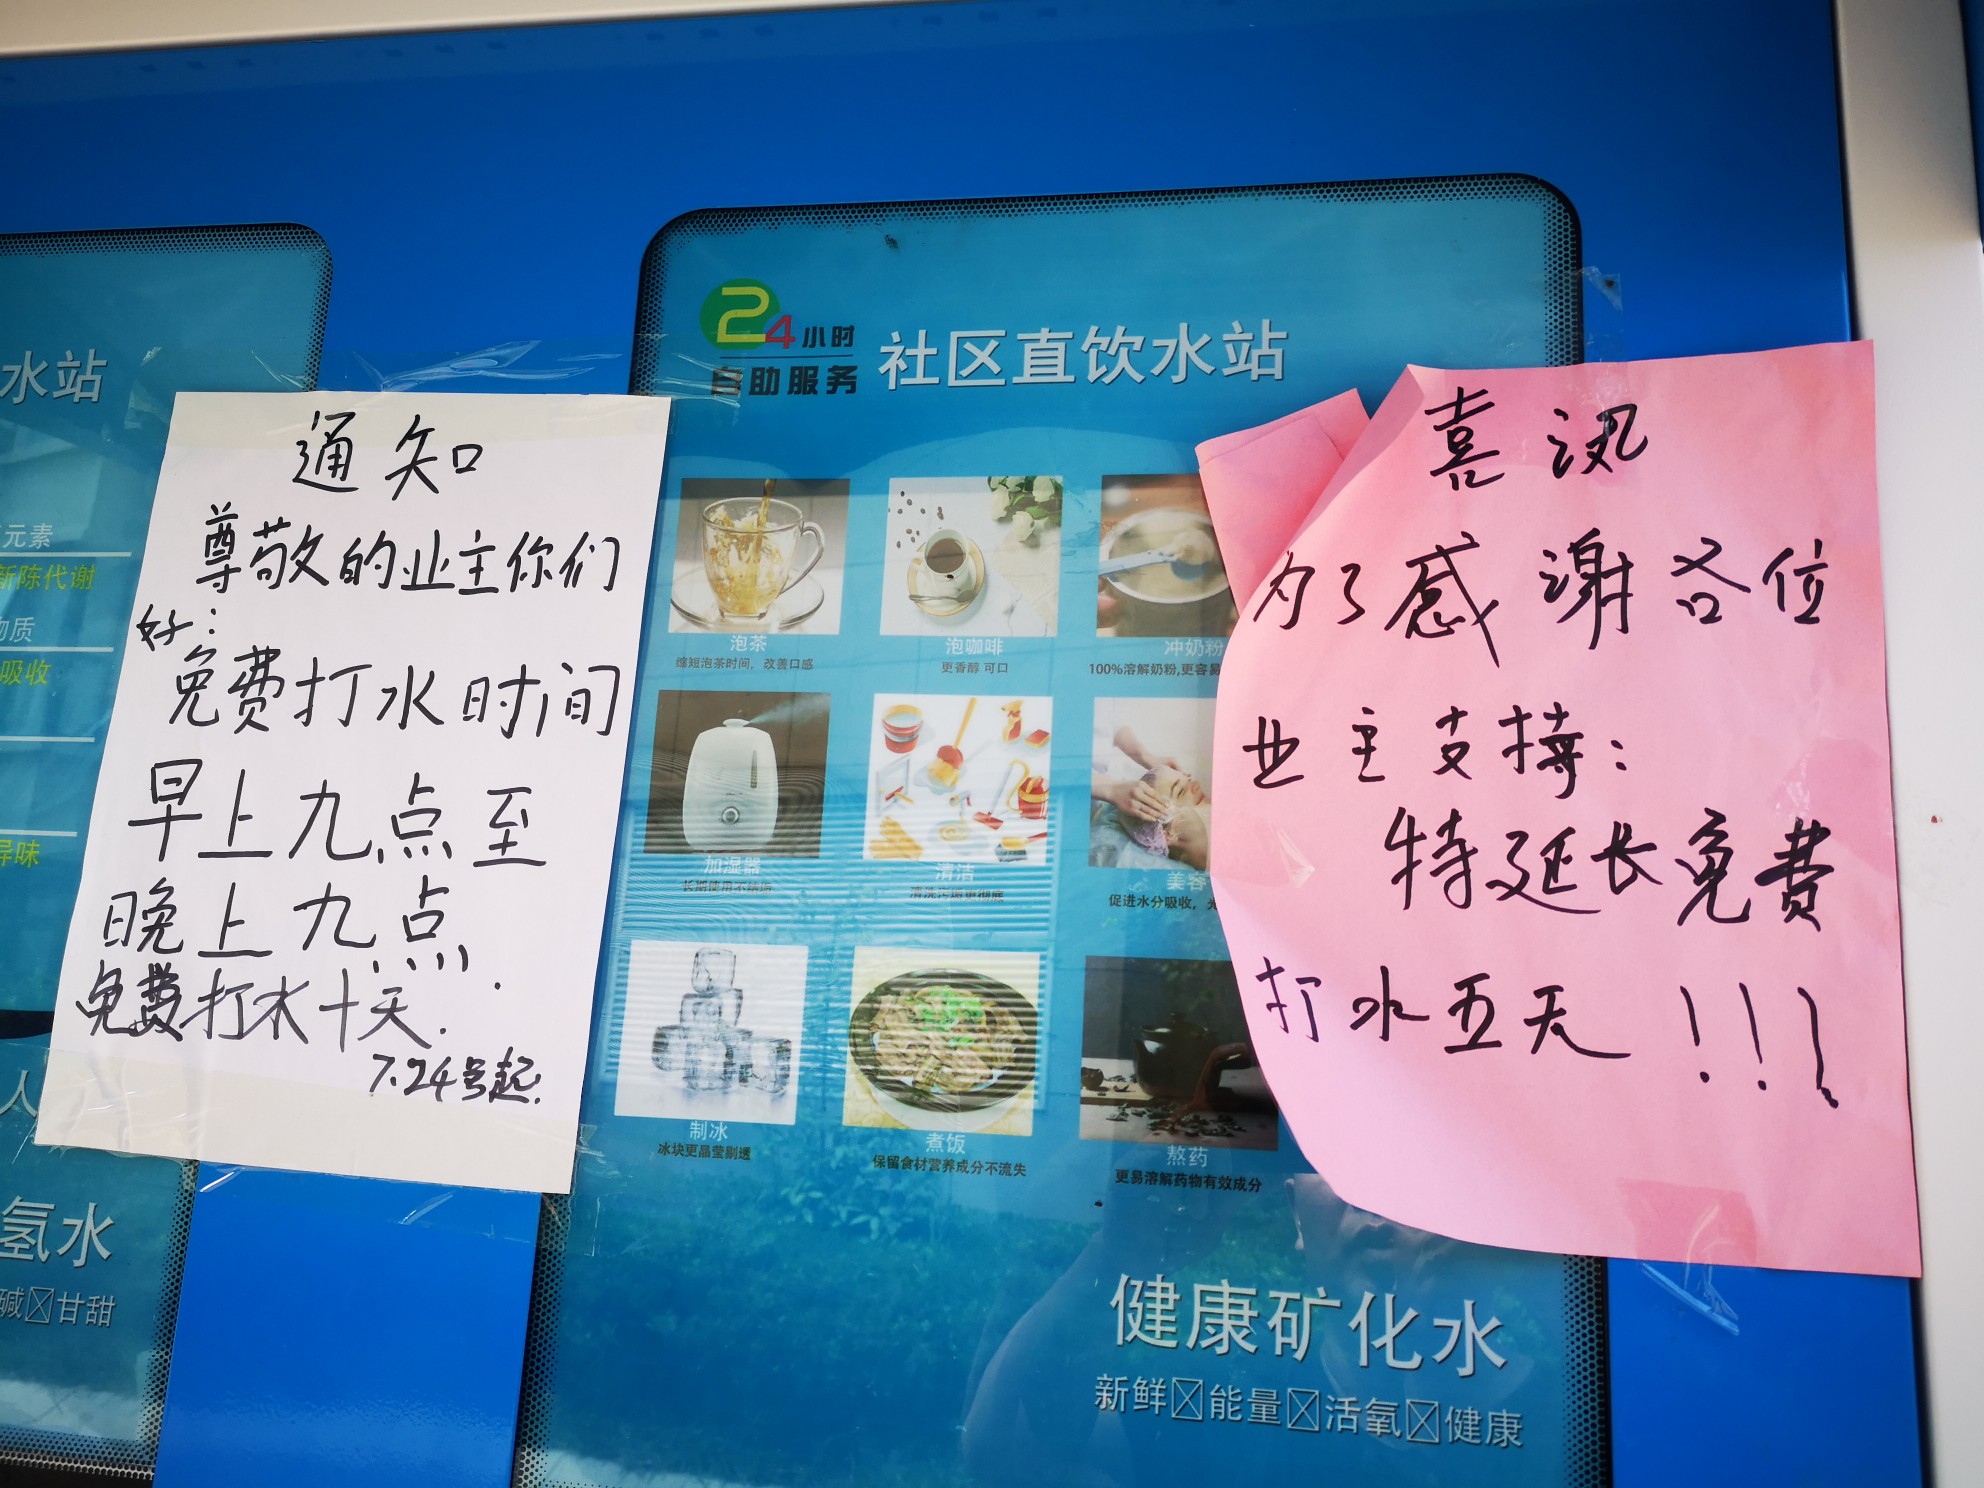 郑州锦绣山河玉畅园小区新换的直饮水站竟是“三无”产品?